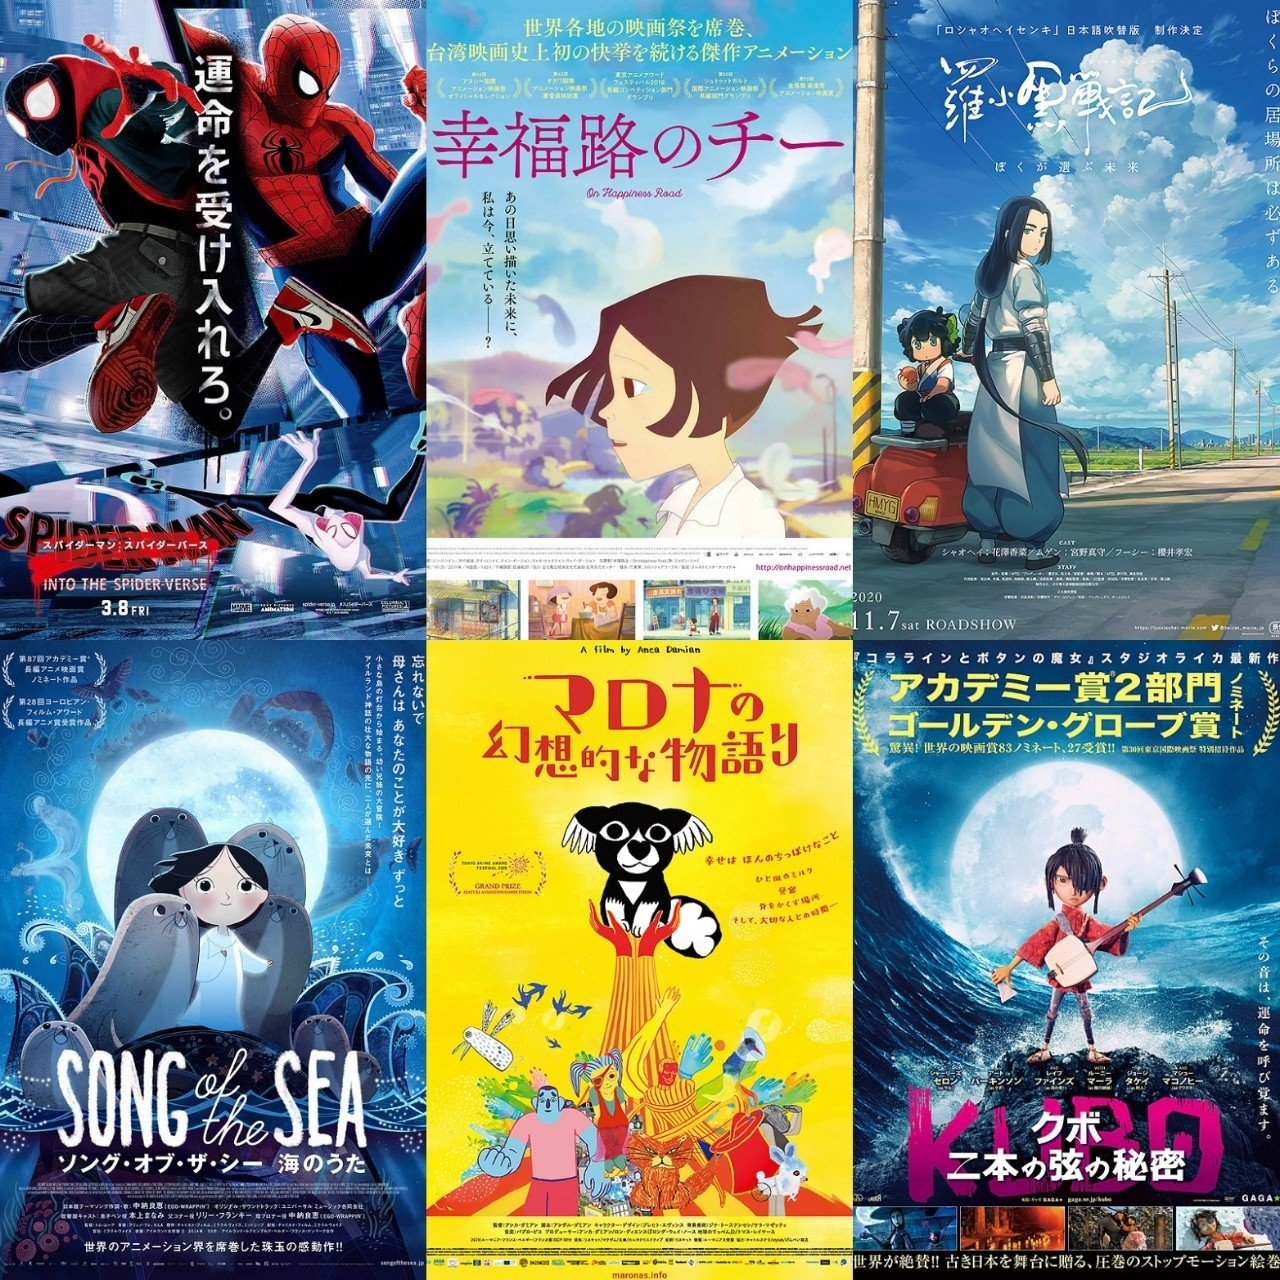 凄いのは日本アニメだけじゃない 恐るべき海外アニメ映画vol 1 ヴィクトリー下村 Note